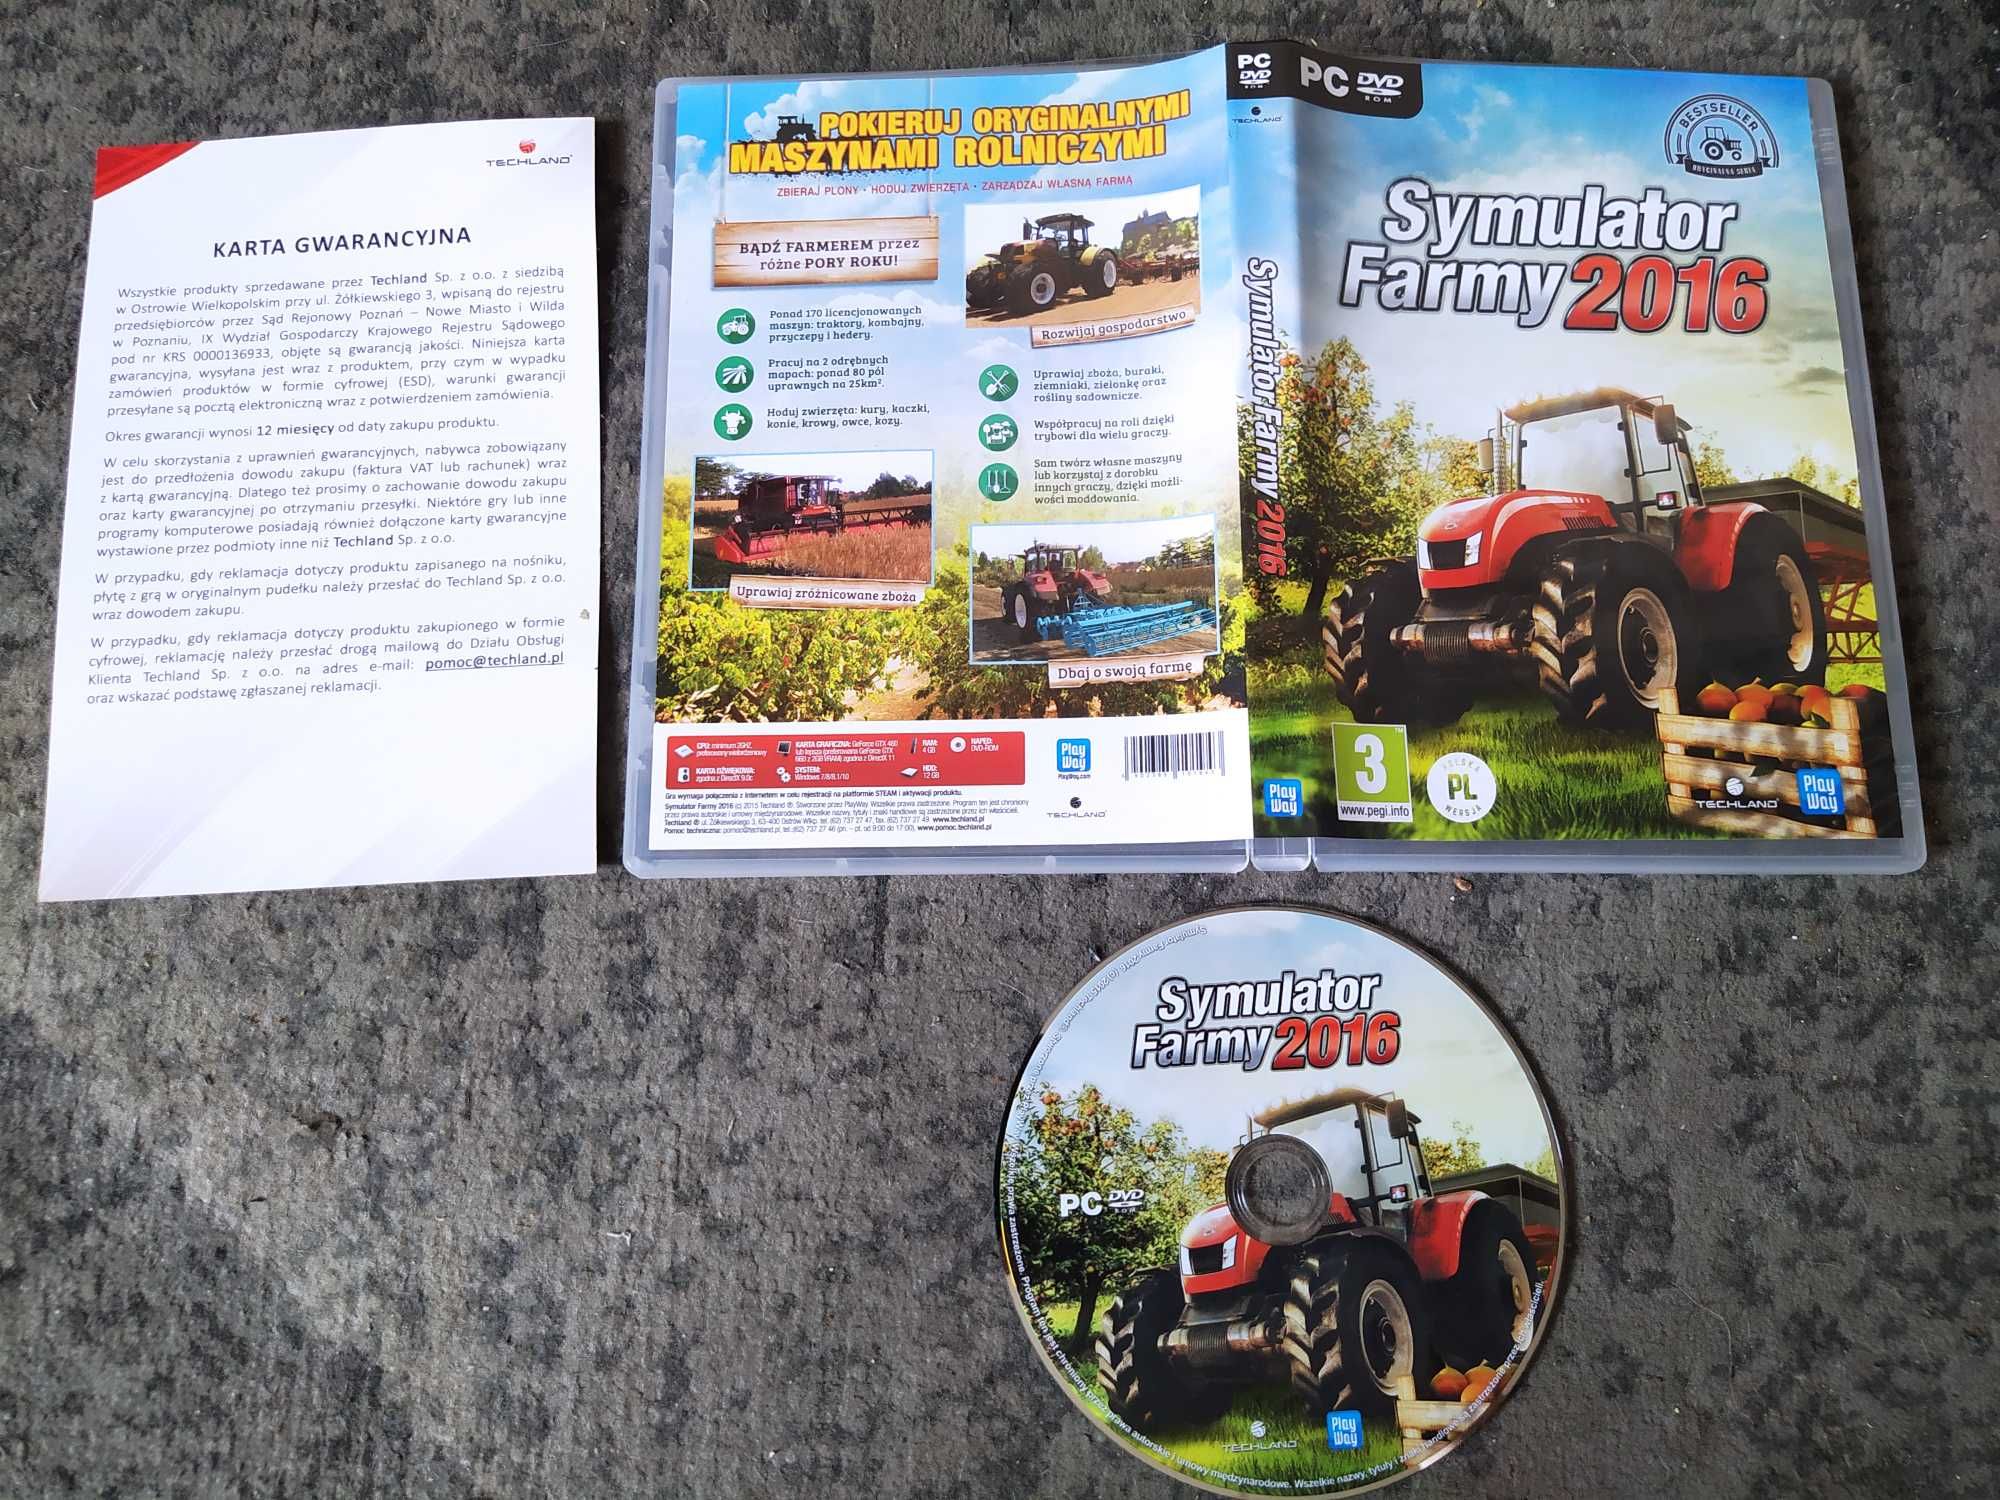 Symulator Farmy 2016 PC DVD